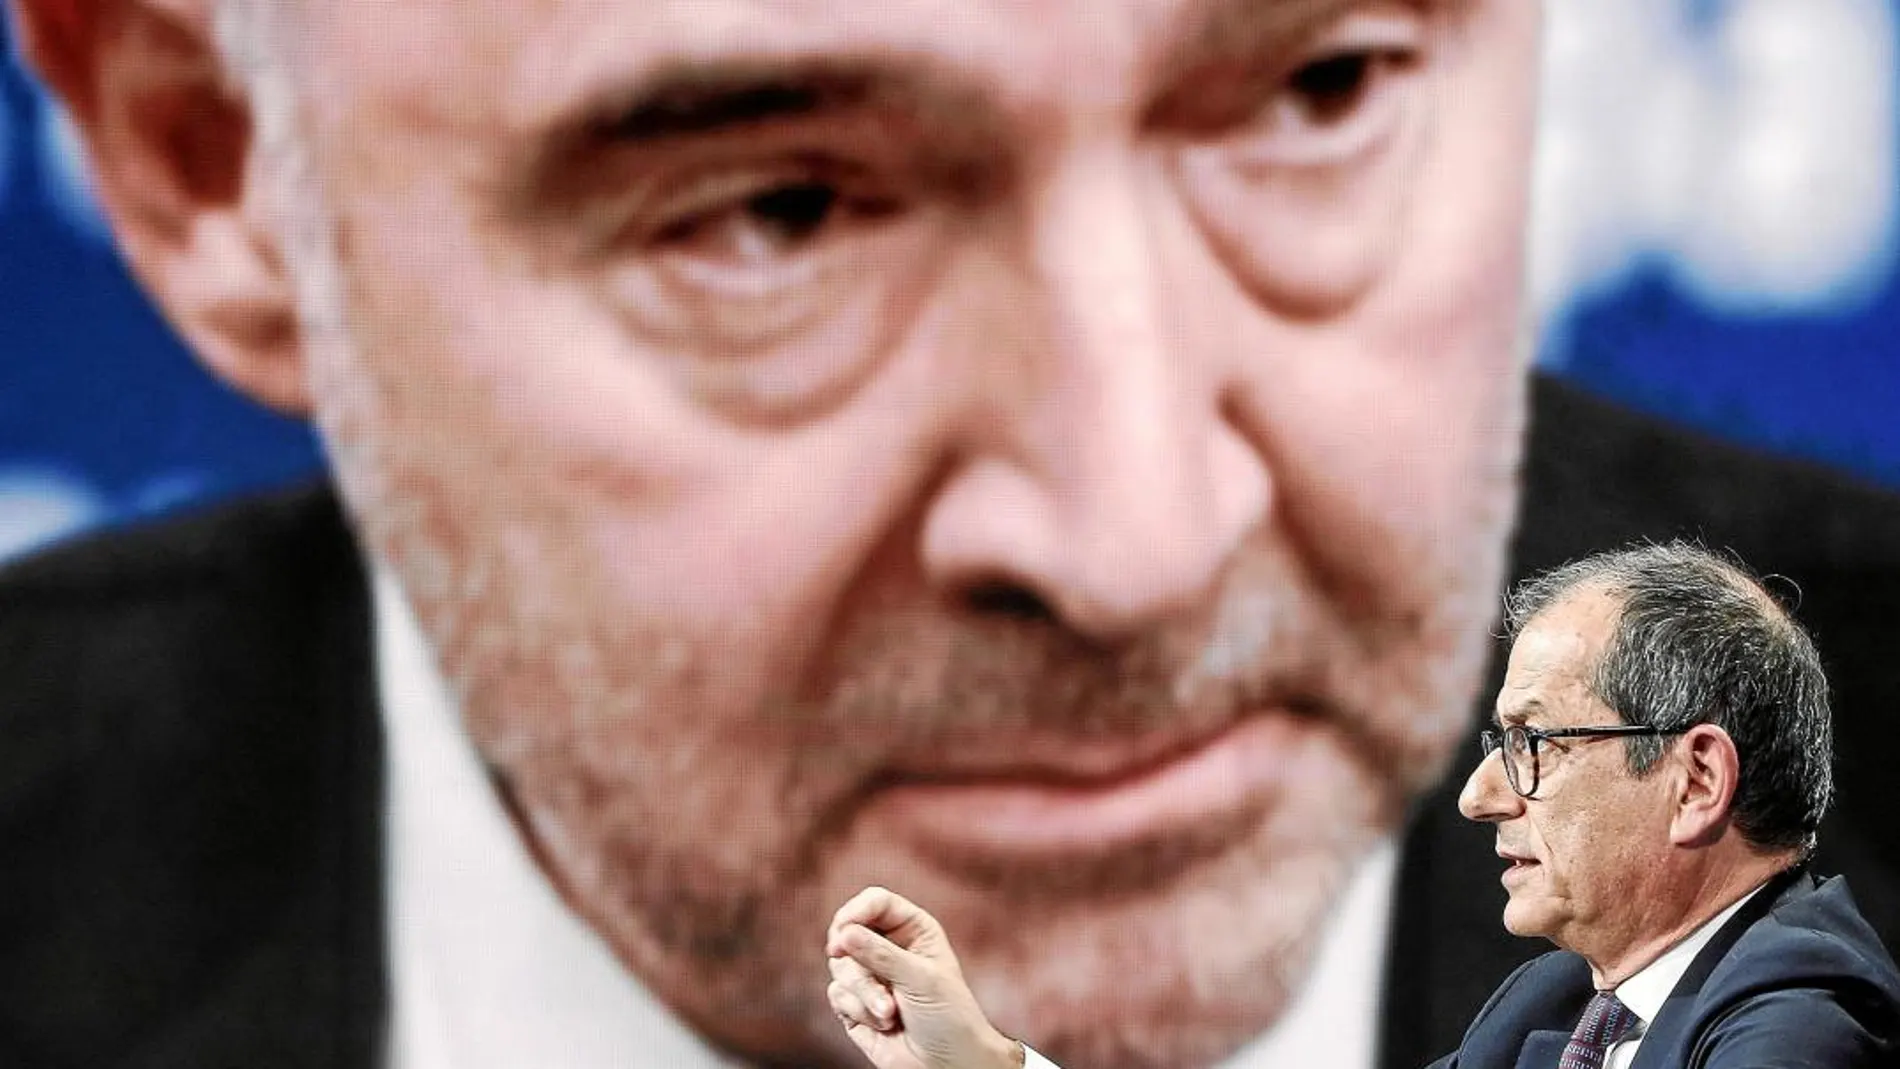 El ministro de Economía y Finanzas italiano, Giovanni Tria. De fondo, una imagen del comisario europeo, Pierre Moscovici